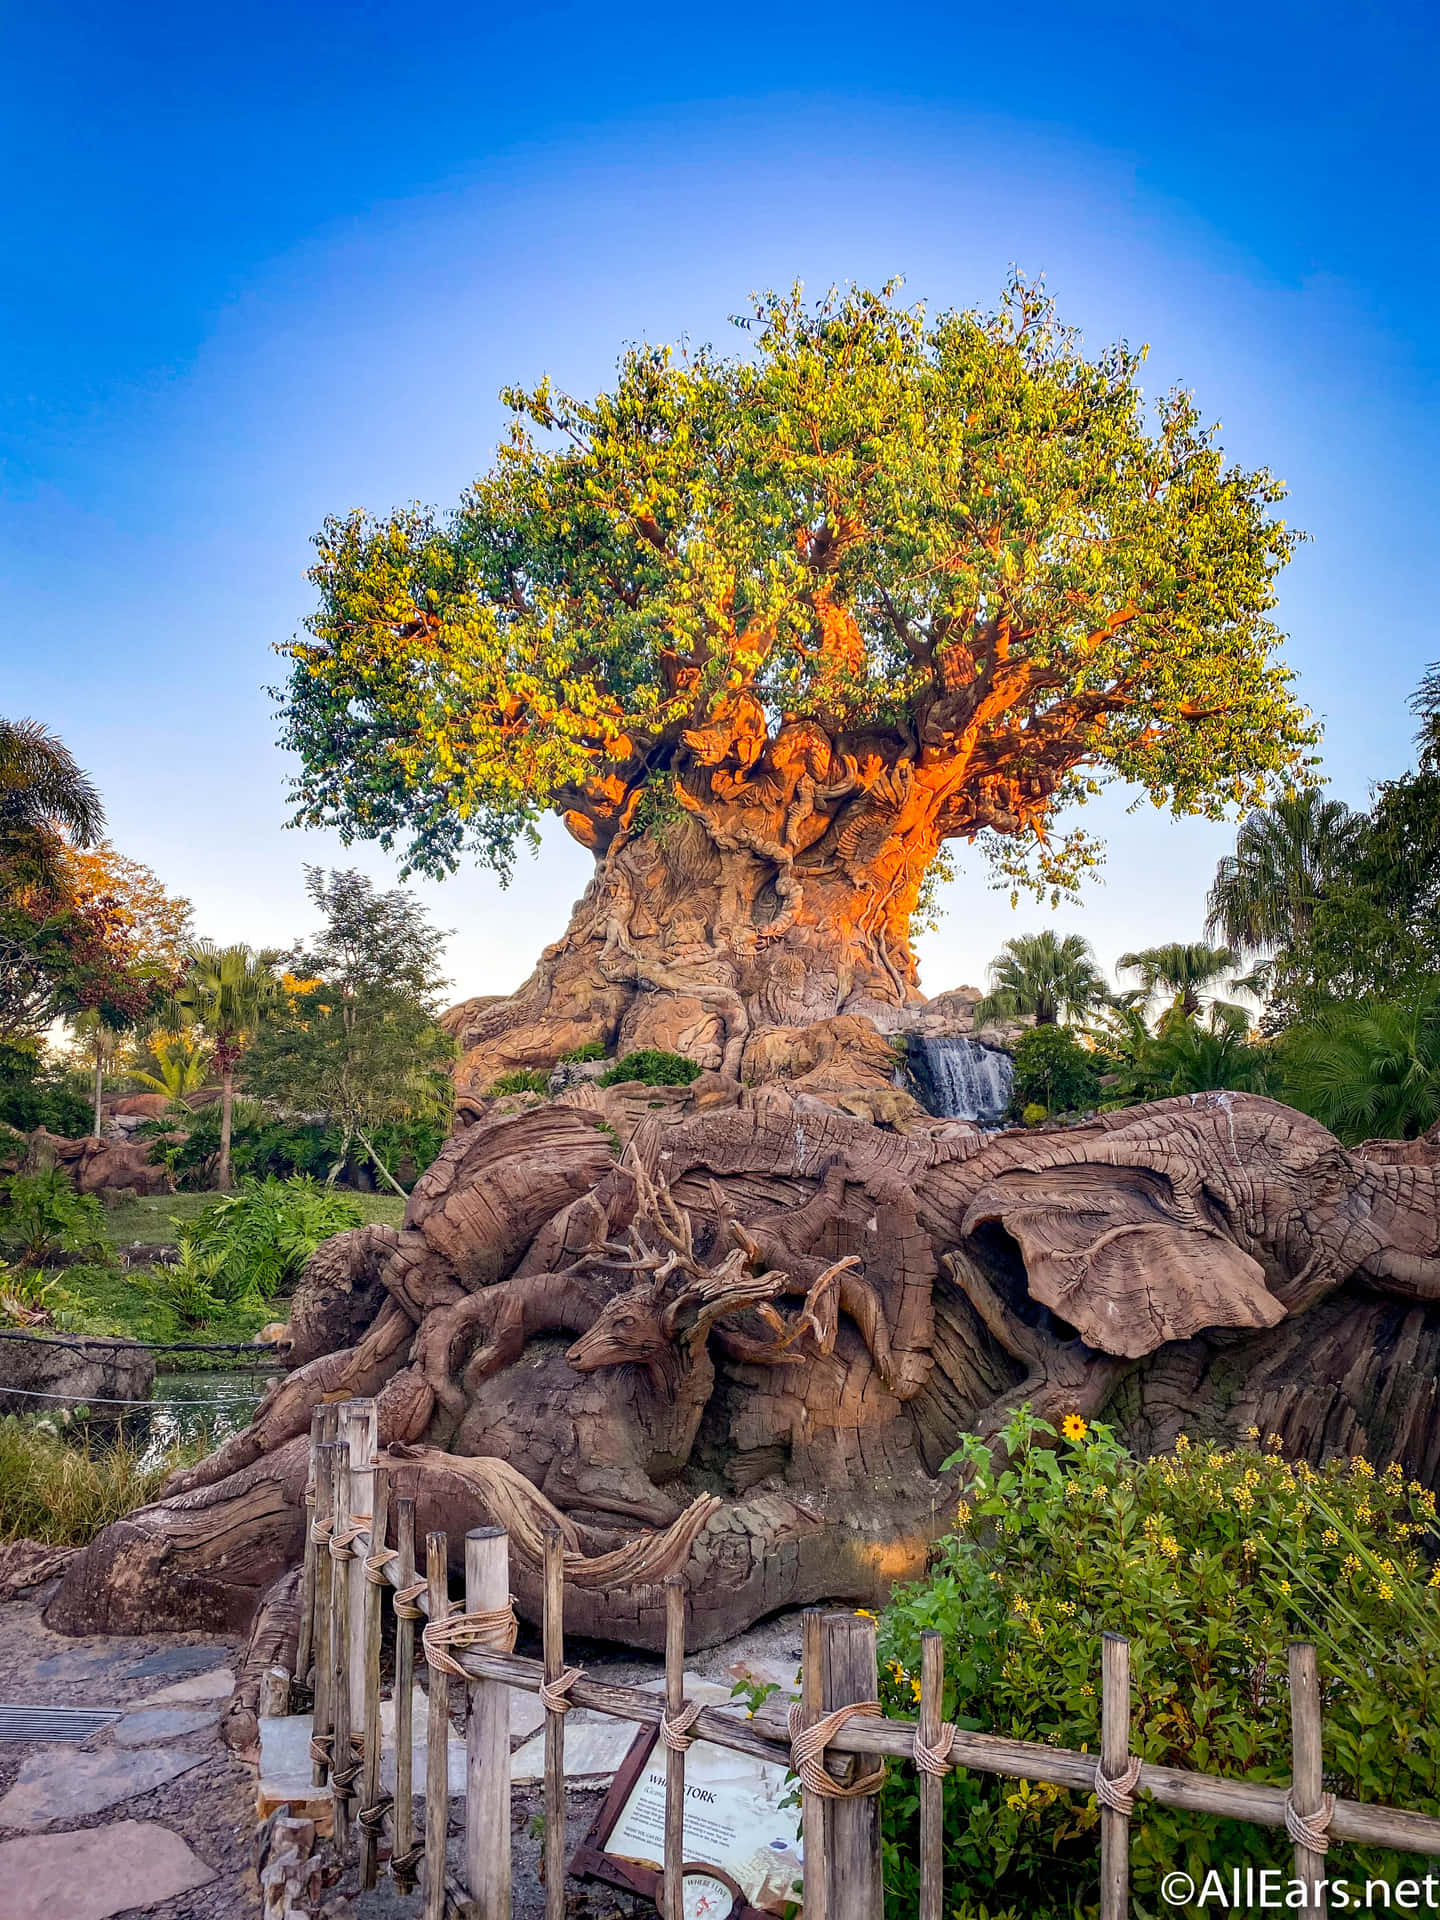 Amaravilha Da Natureza: Uma Majestosa Árvore Da Vida. Papel de Parede